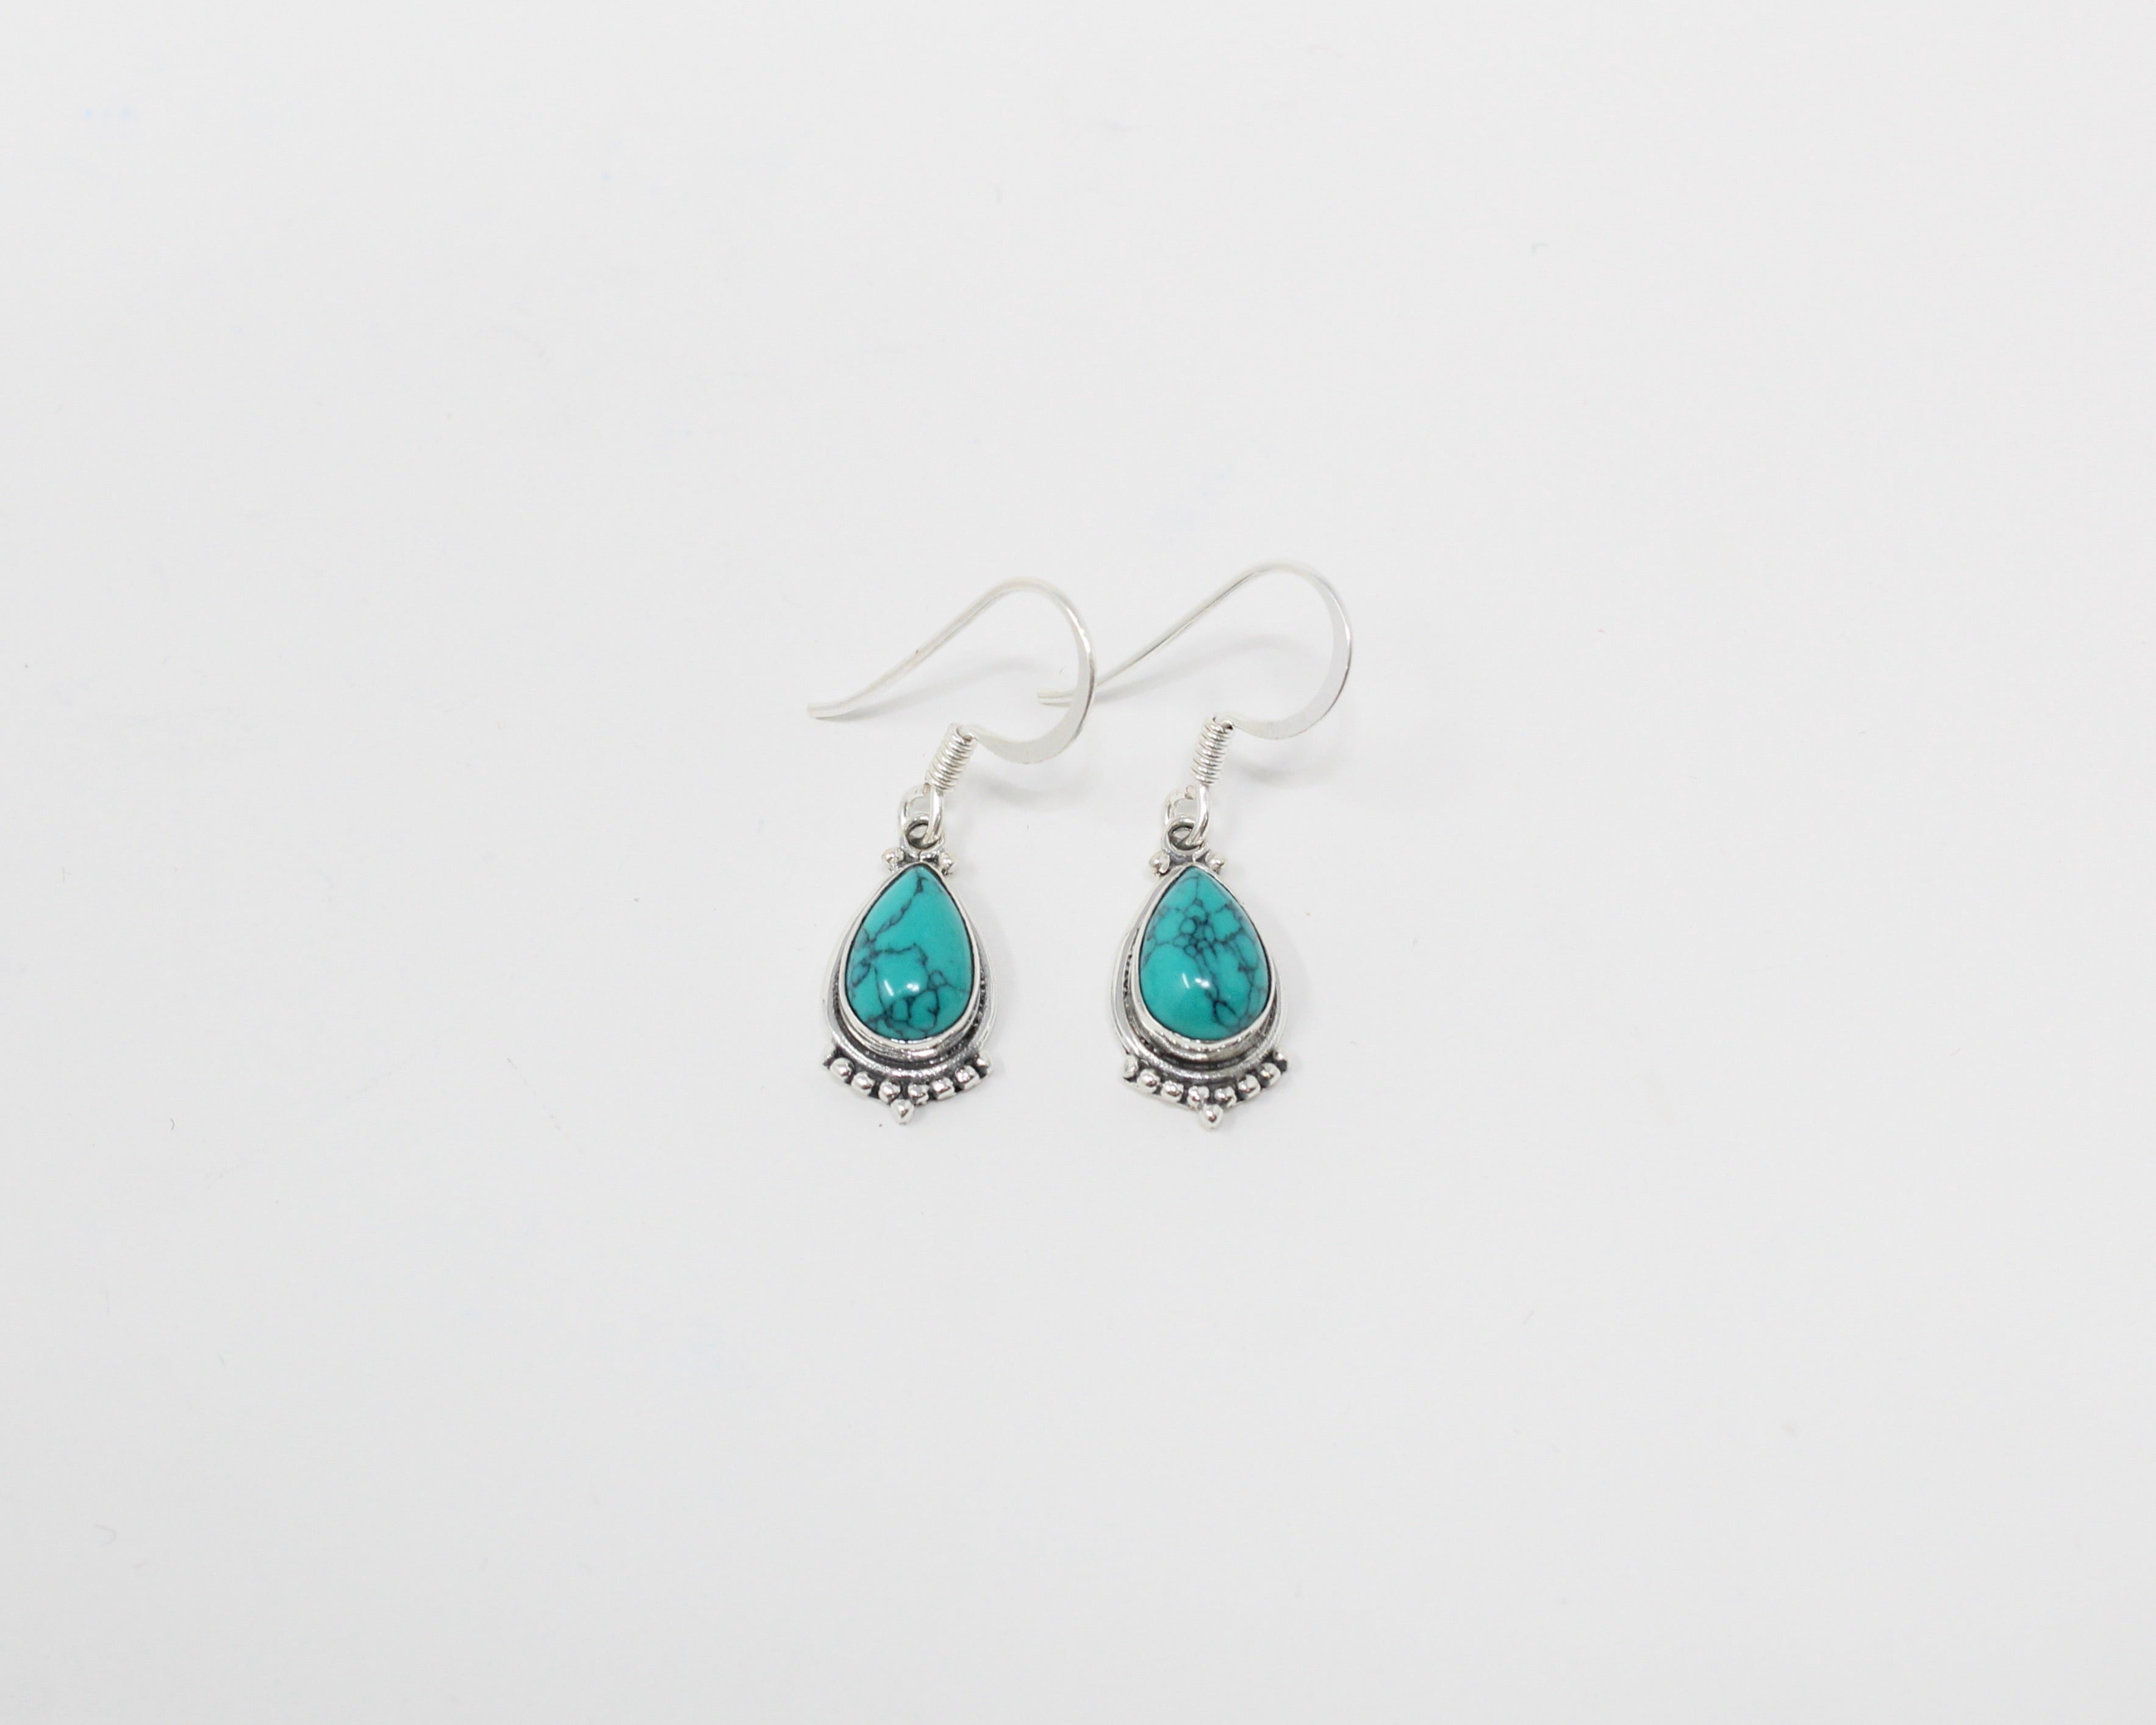 HARA, boucles d'oreilles argent sterling et pierre semi-précieuse, turquoise.